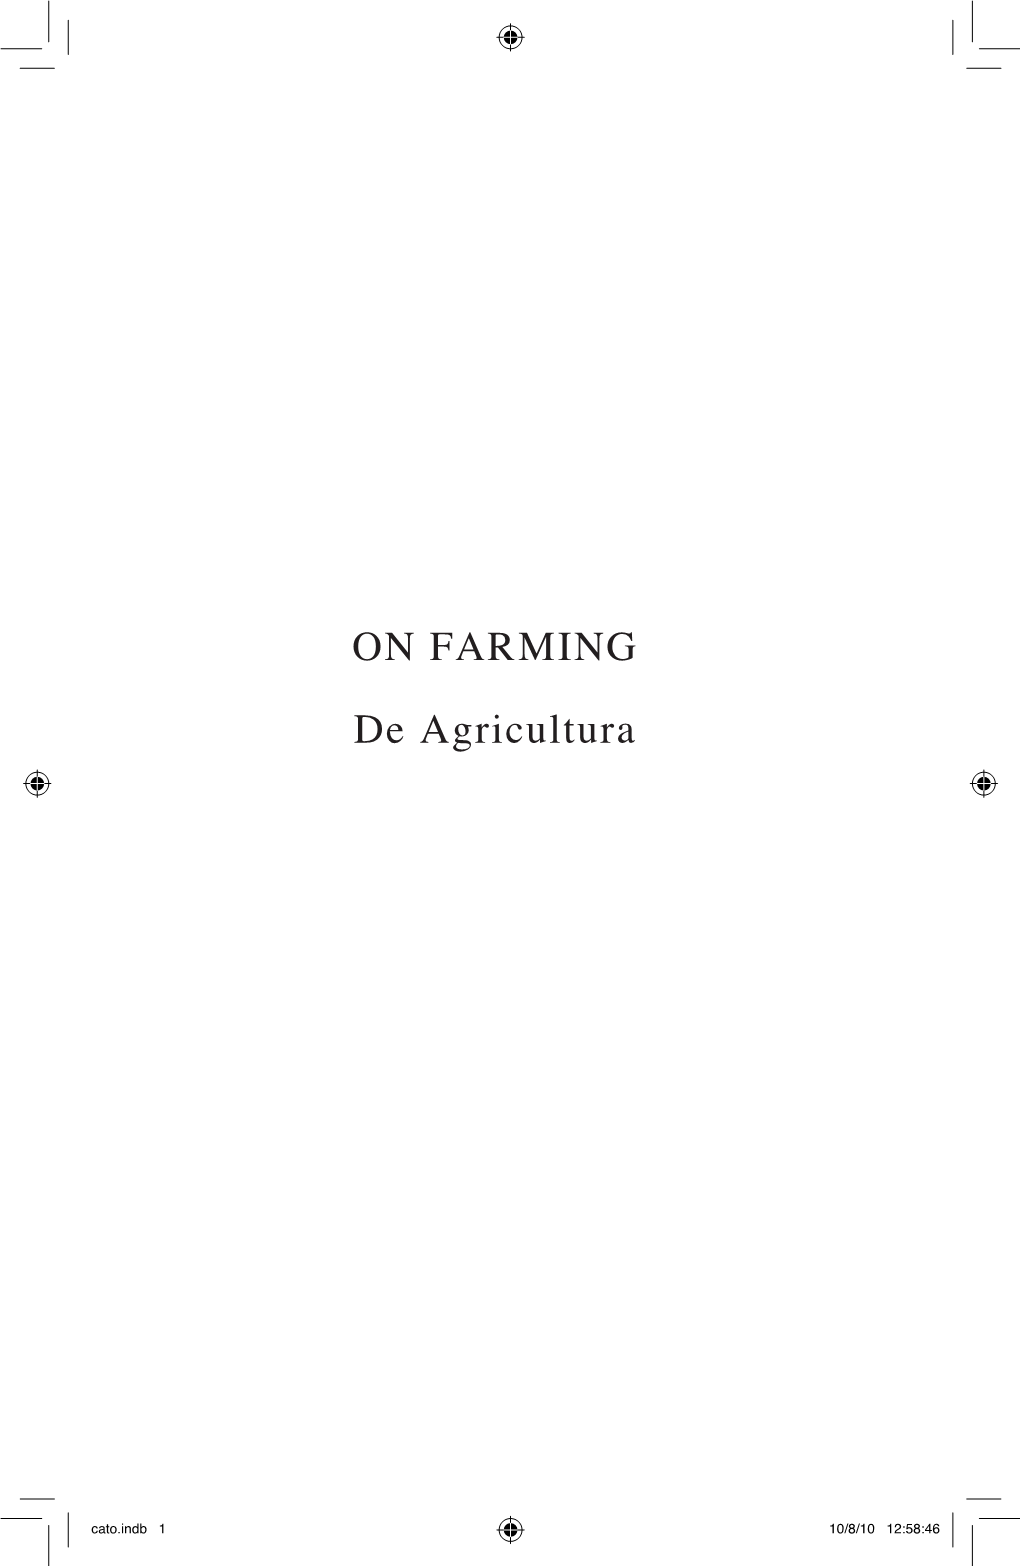 ON FARMING De Agricultura